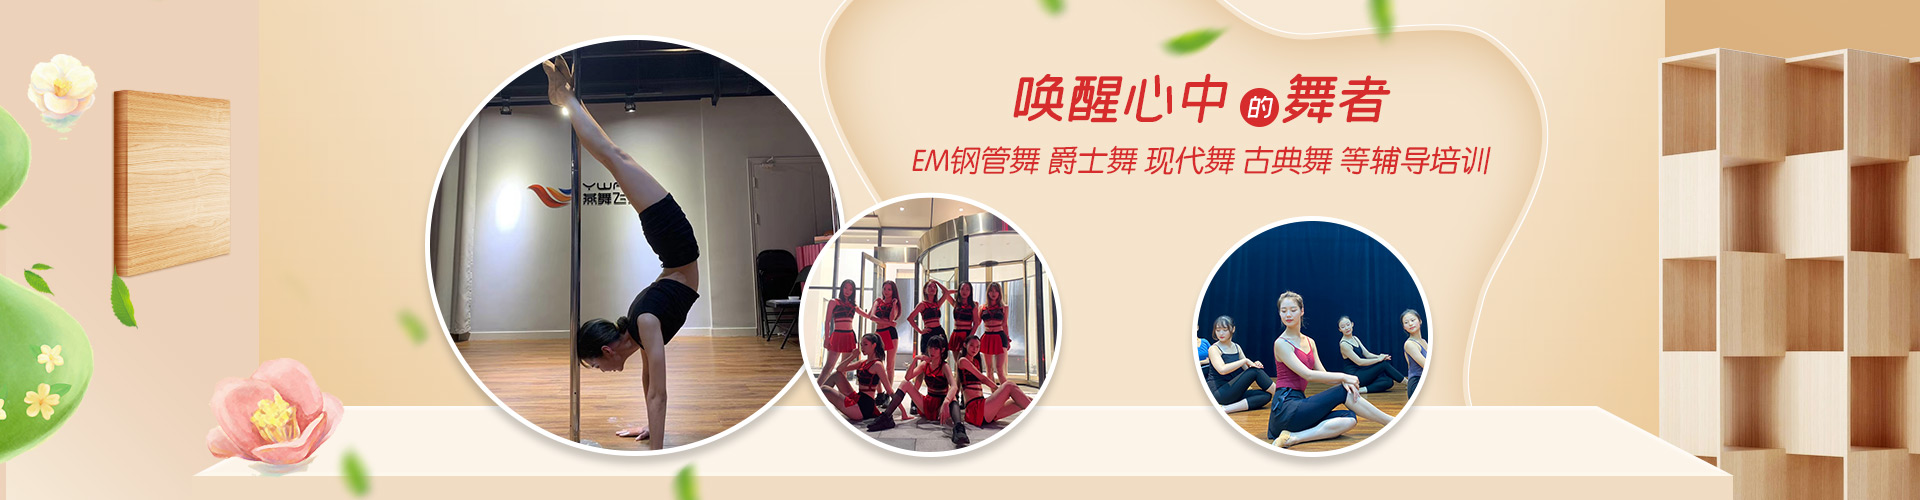 秦皇岛椅子舞舞蹈学校